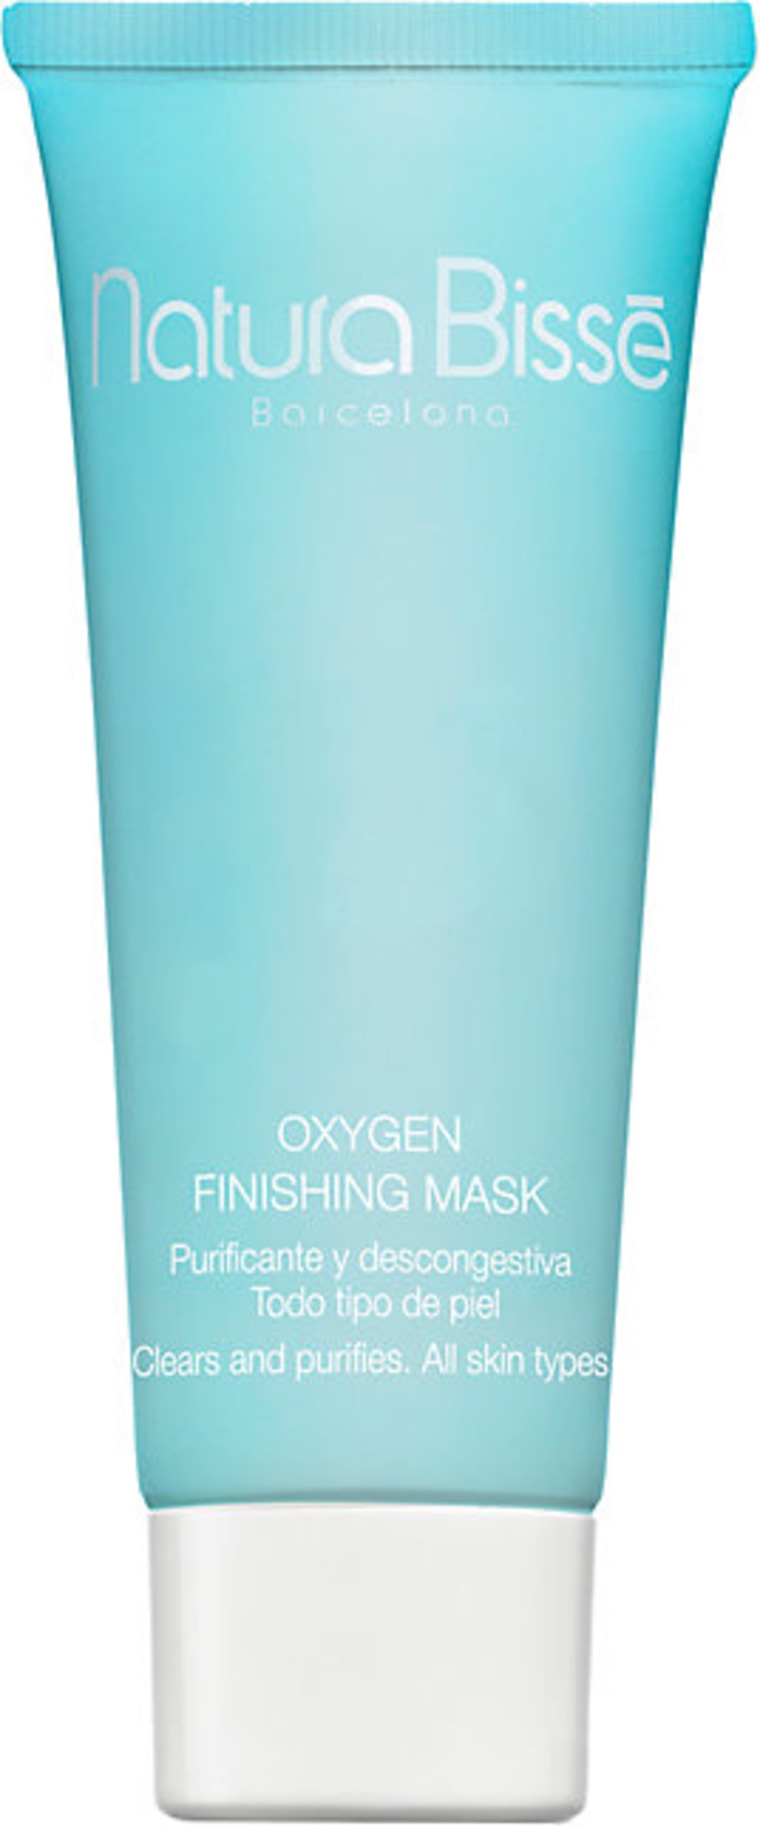 Oxygen face mask